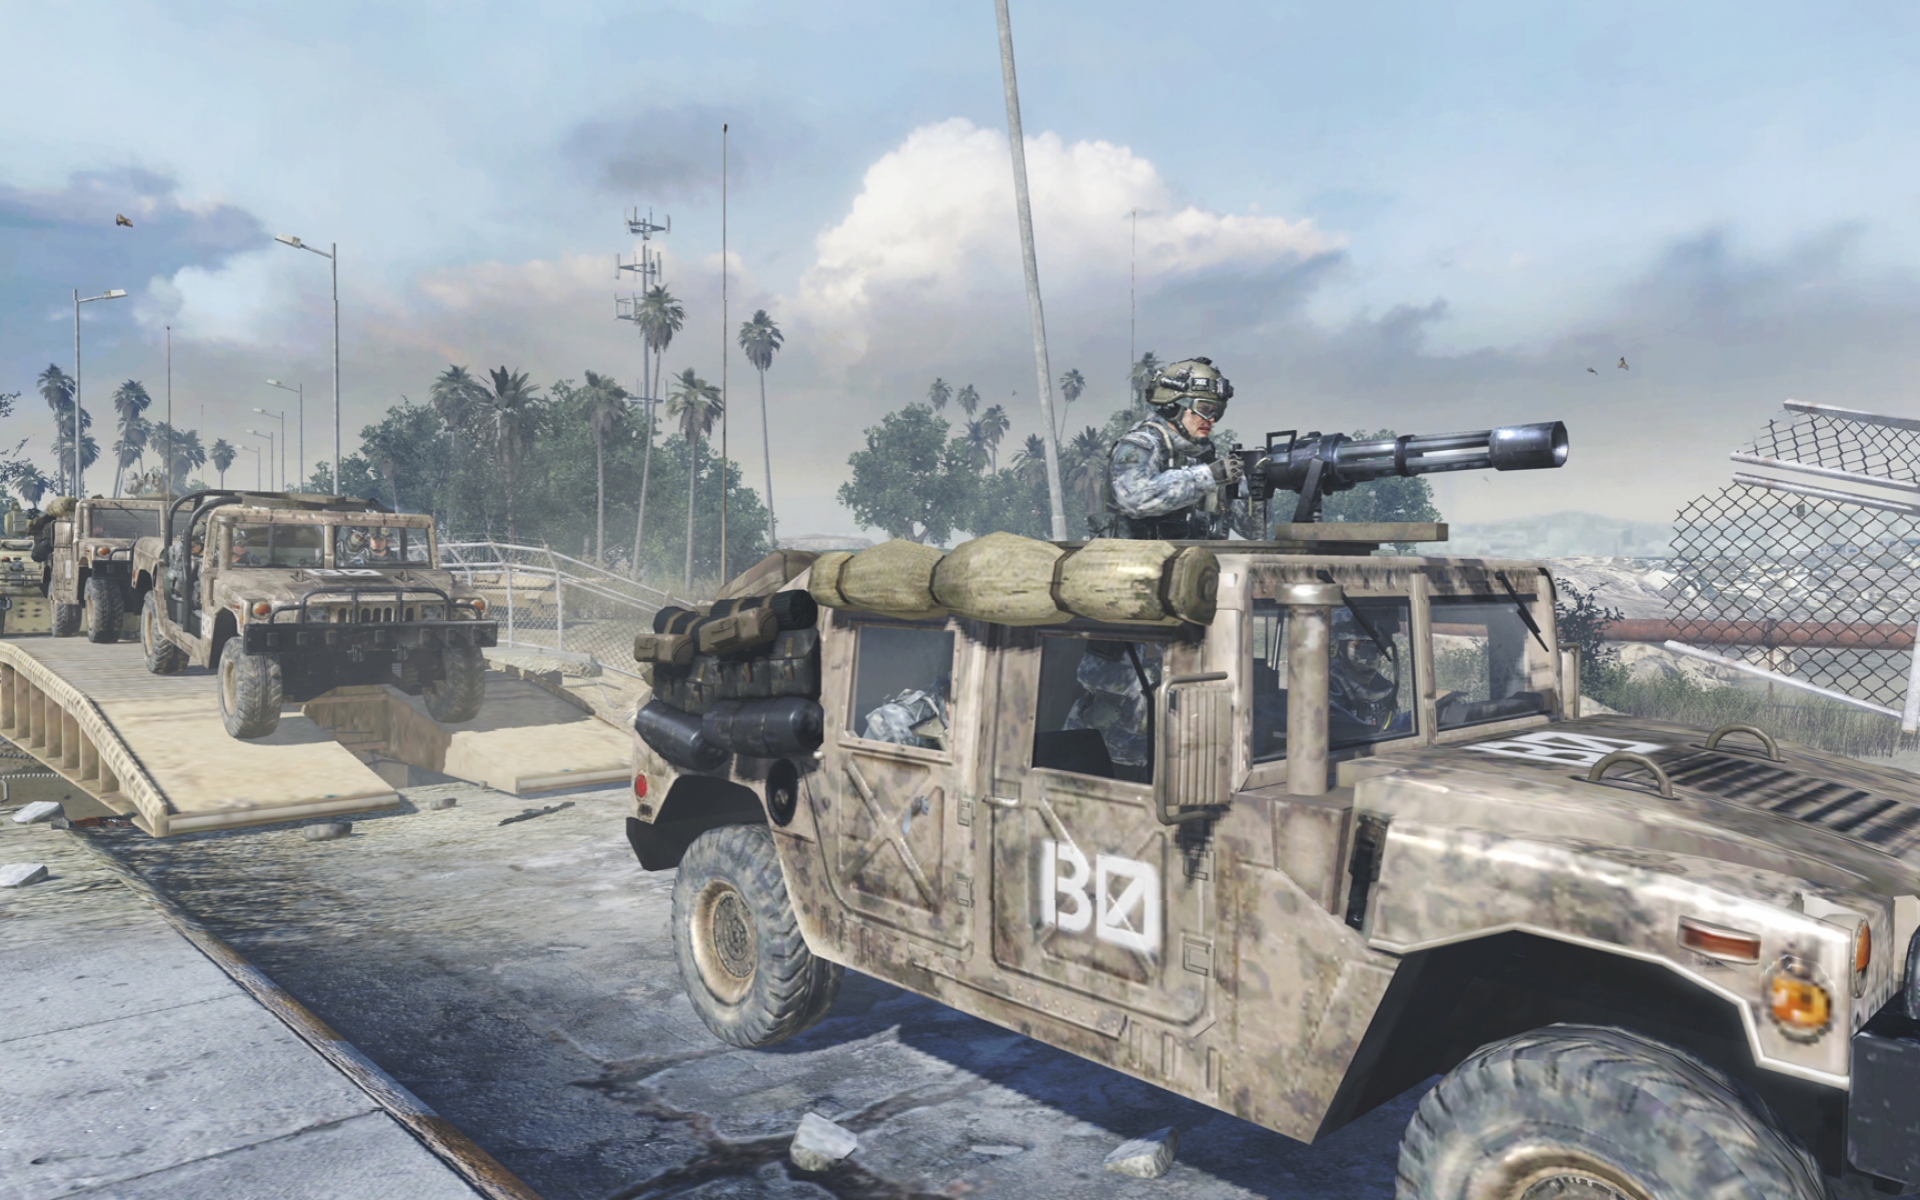 Скачать обои бесплатно Видеоигры, Call Of Duty Modern Warfare 2, Зов Долга картинка на рабочий стол ПК